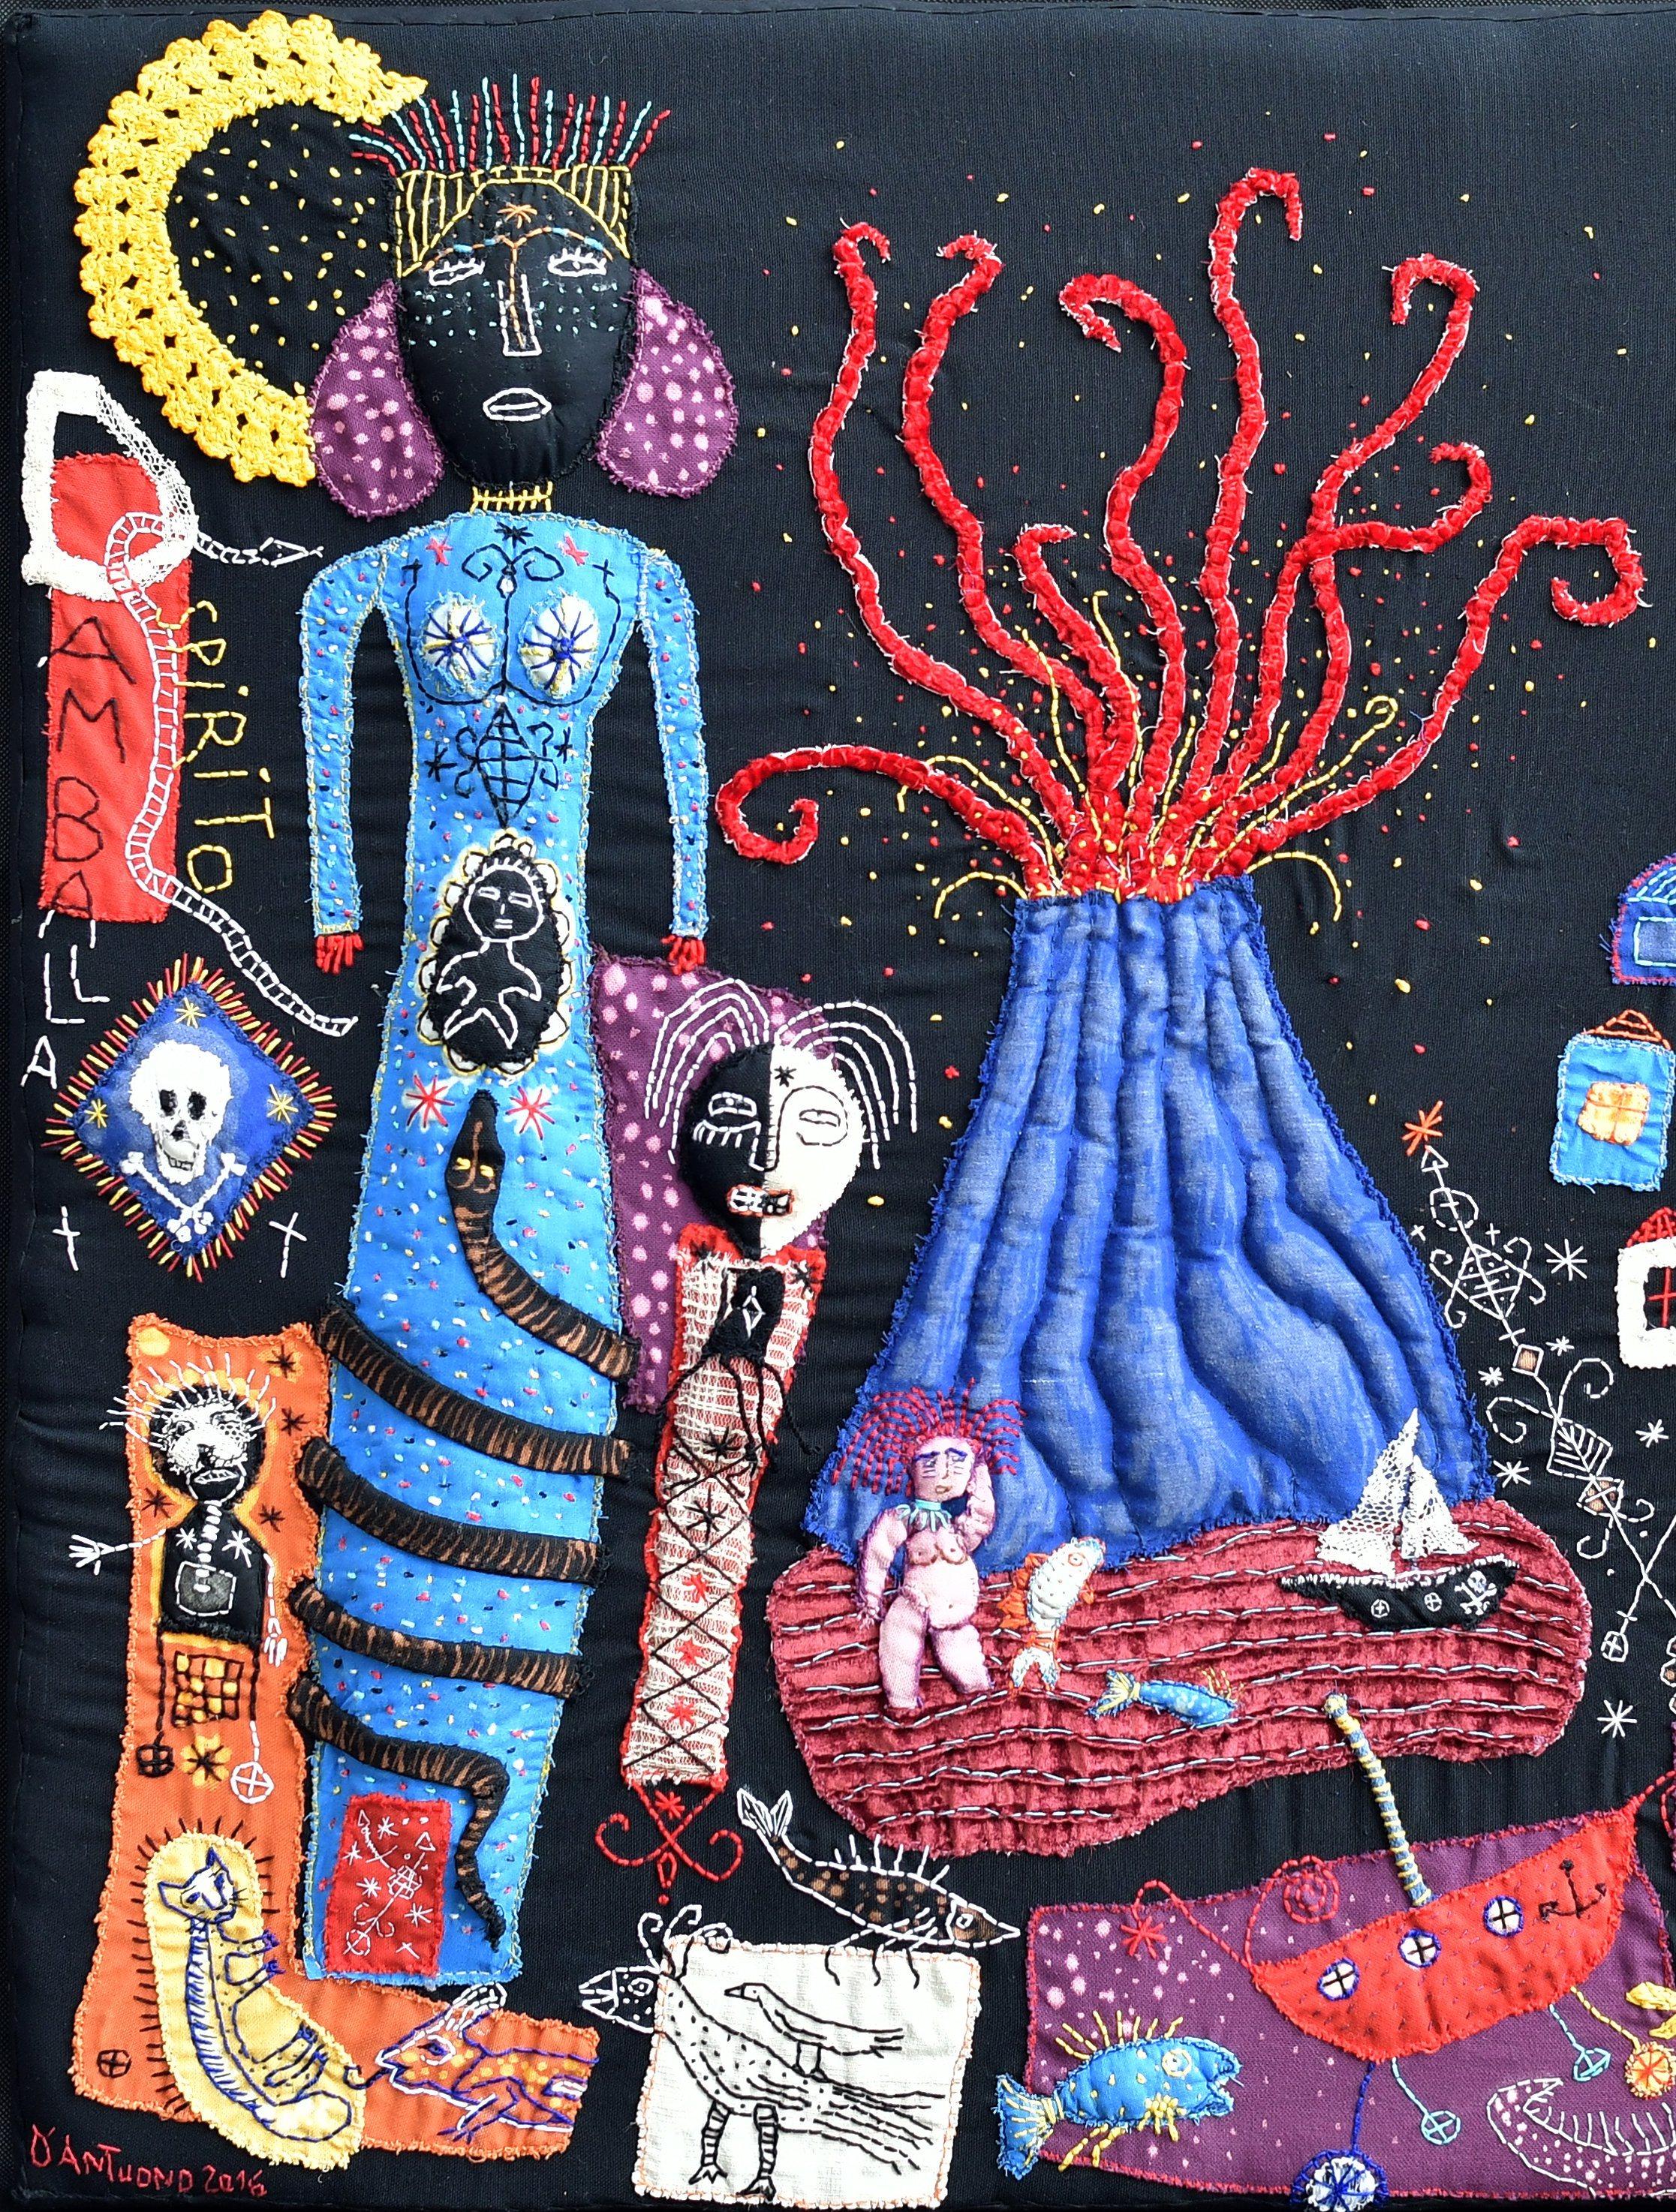 Dambala spirito, Barbara d'Antuono, art textile contemporain du 21e siècle - Contemporain Art par Barbara d' Antuono